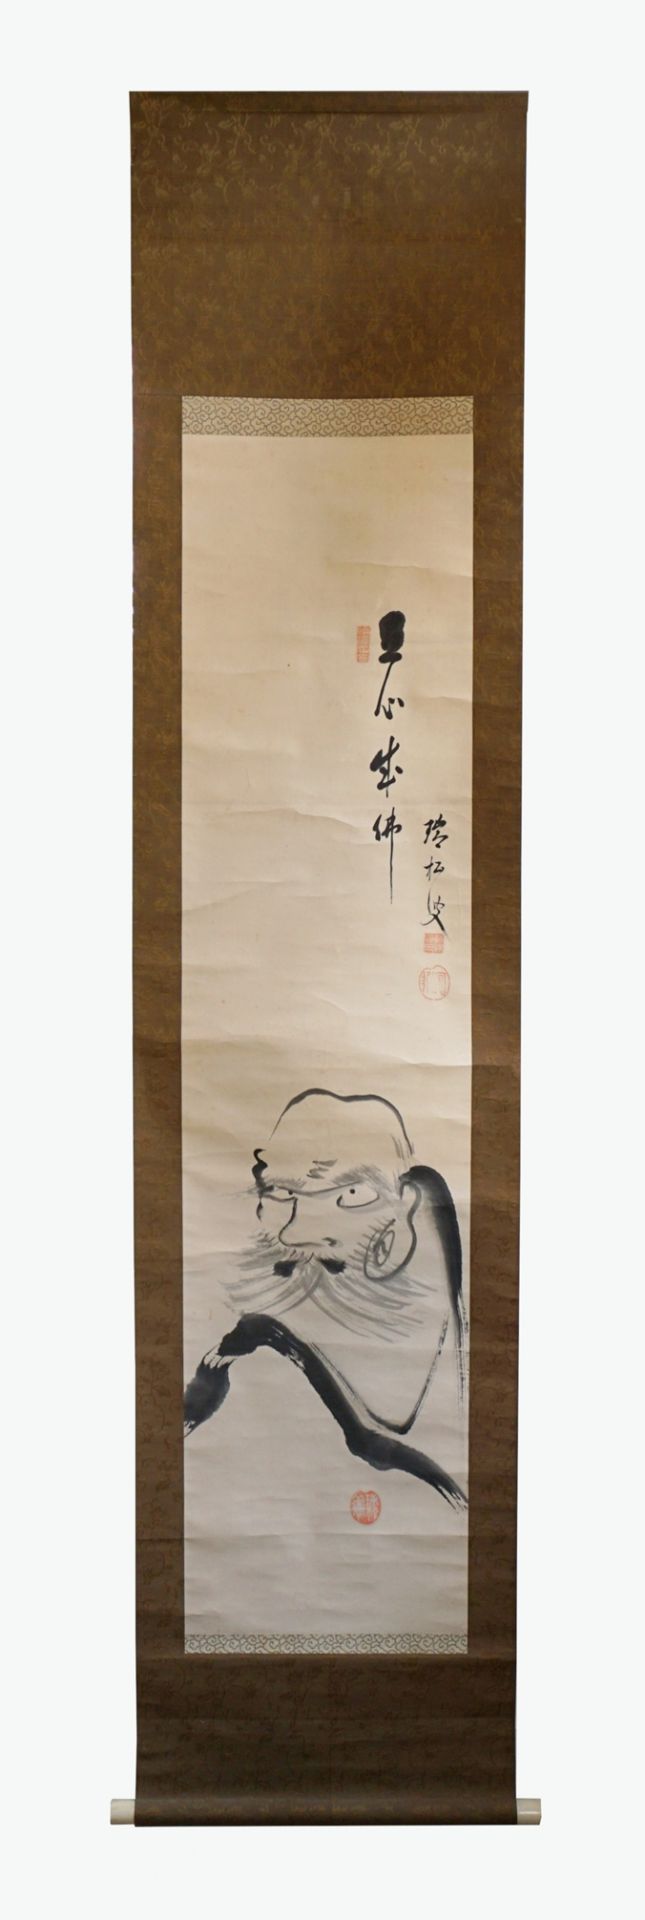 Hängerolle mit Tuschmalerei "Daruma", Japan, Edo-Zeit